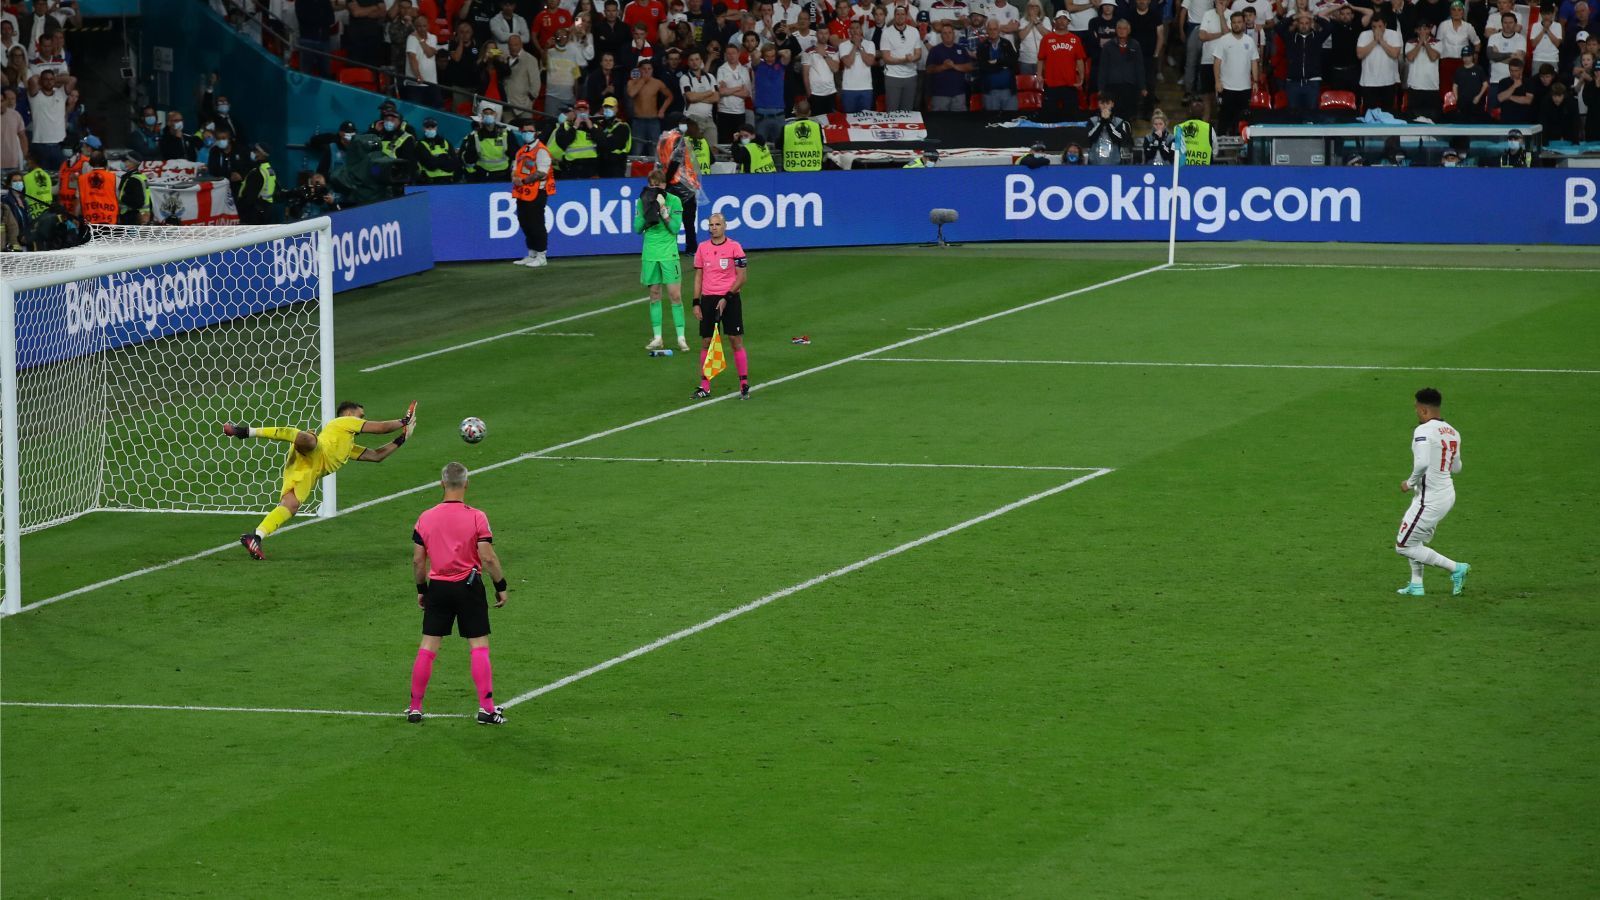 
                <strong>BBC (England)</strong><br>
                "Englands Versuch, das 55-jährige Warten auf eine große Trophäe zu beenden, endete mit der bekannten Qual der Niederlage im Elfmeterschießen, als Italien in Wembley die EM 2020-Krone holte."
              